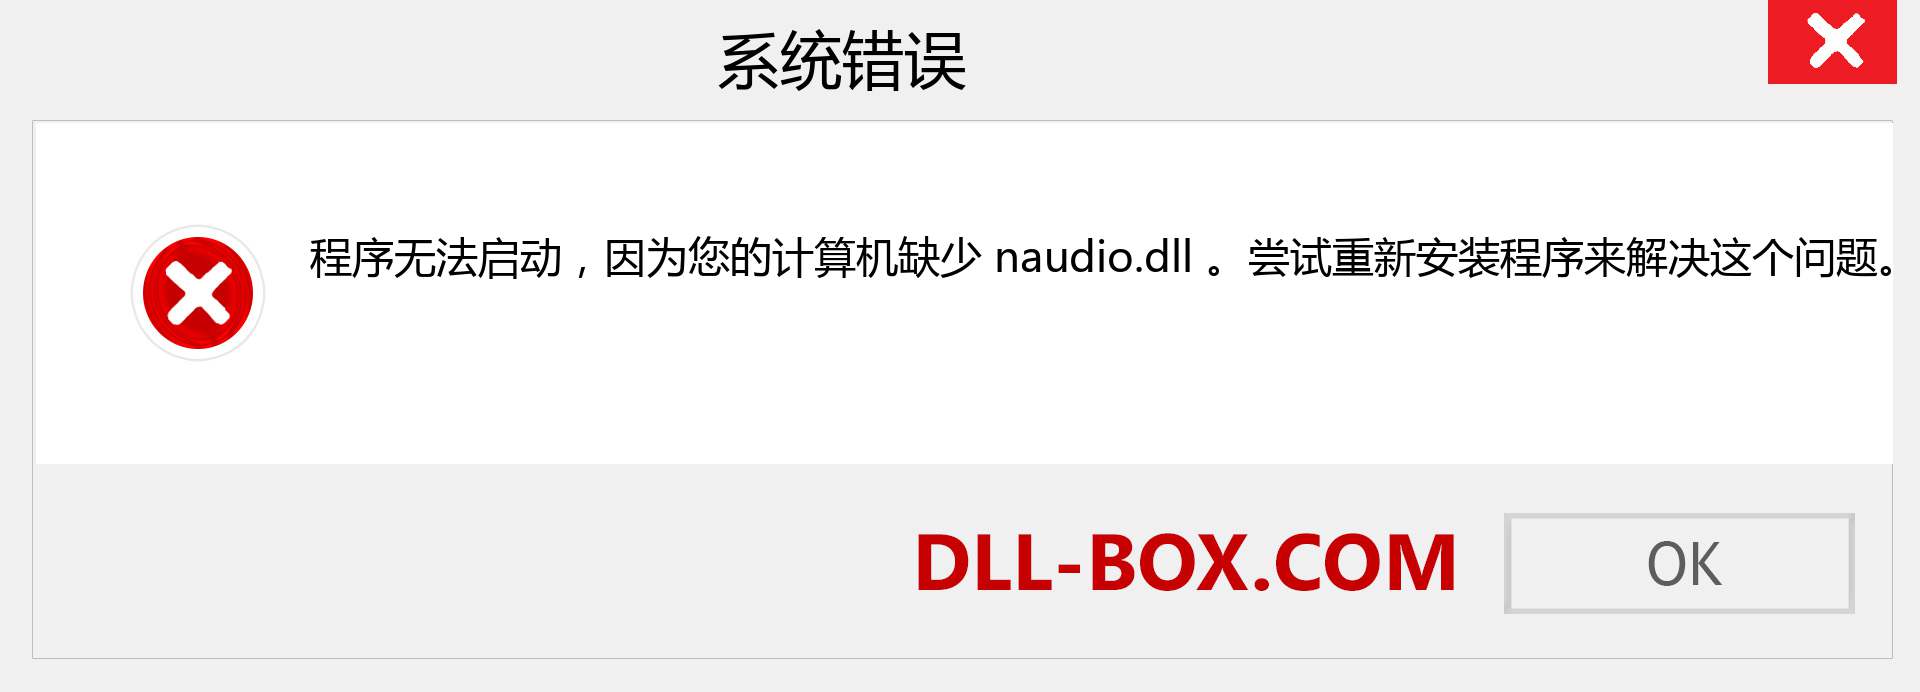 naudio.dll 文件丢失？。 适用于 Windows 7、8、10 的下载 - 修复 Windows、照片、图像上的 naudio dll 丢失错误